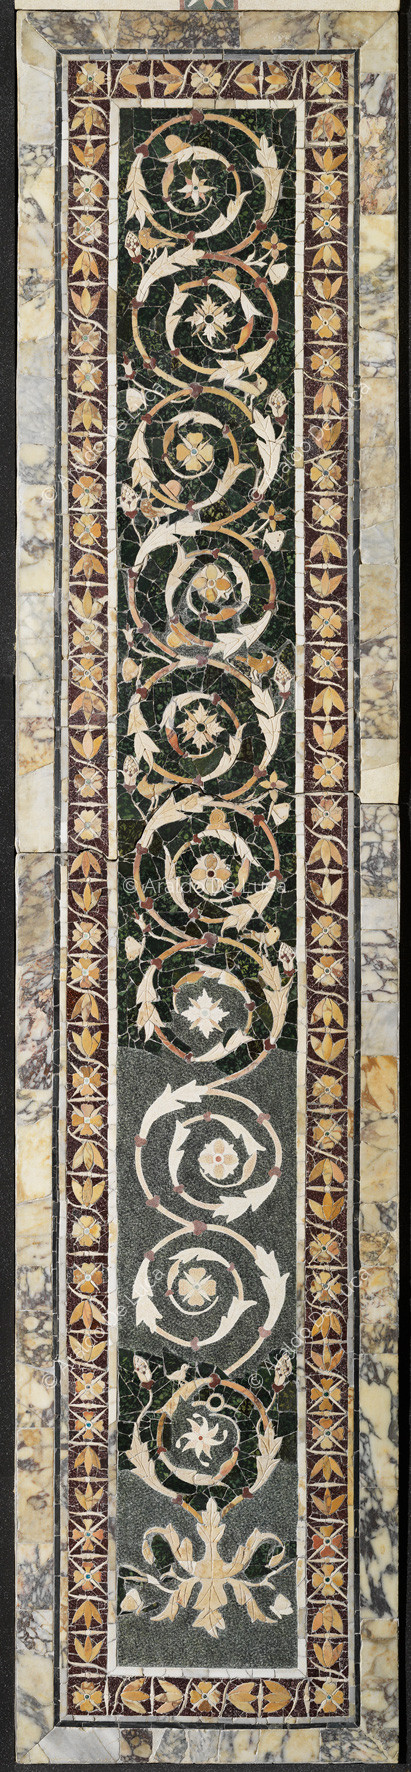 Pilaster mit blumenzweig und rand von lotusblumen - Opus Sectile in Porta Marina, besonder